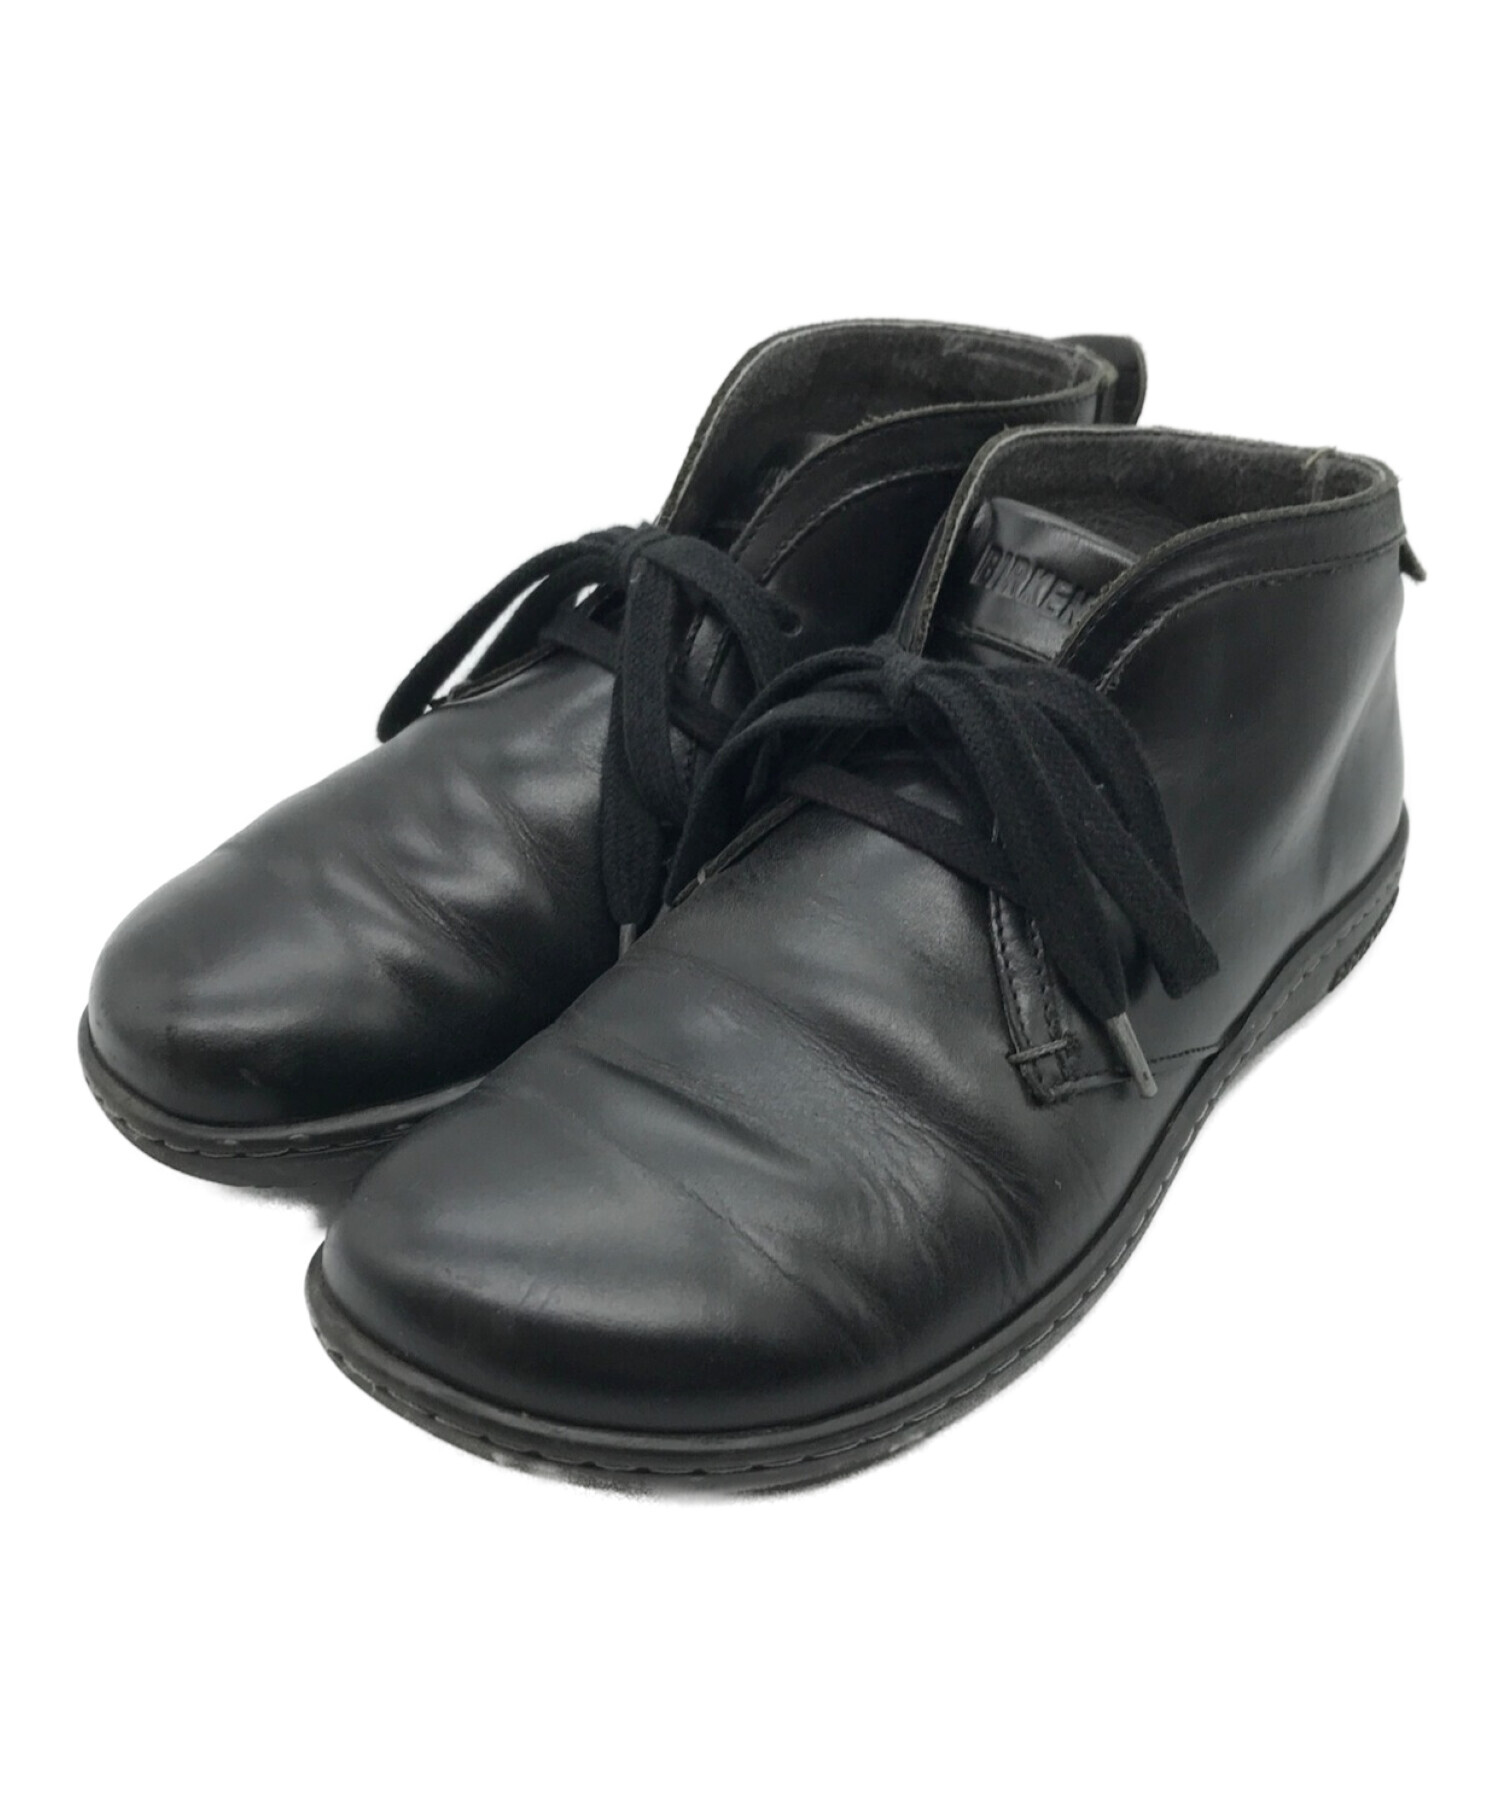 BIRKENSTOCK (ビルケンシュトック) SCARBA スカルバ チャッカ ブーツ ブラック サイズ:37